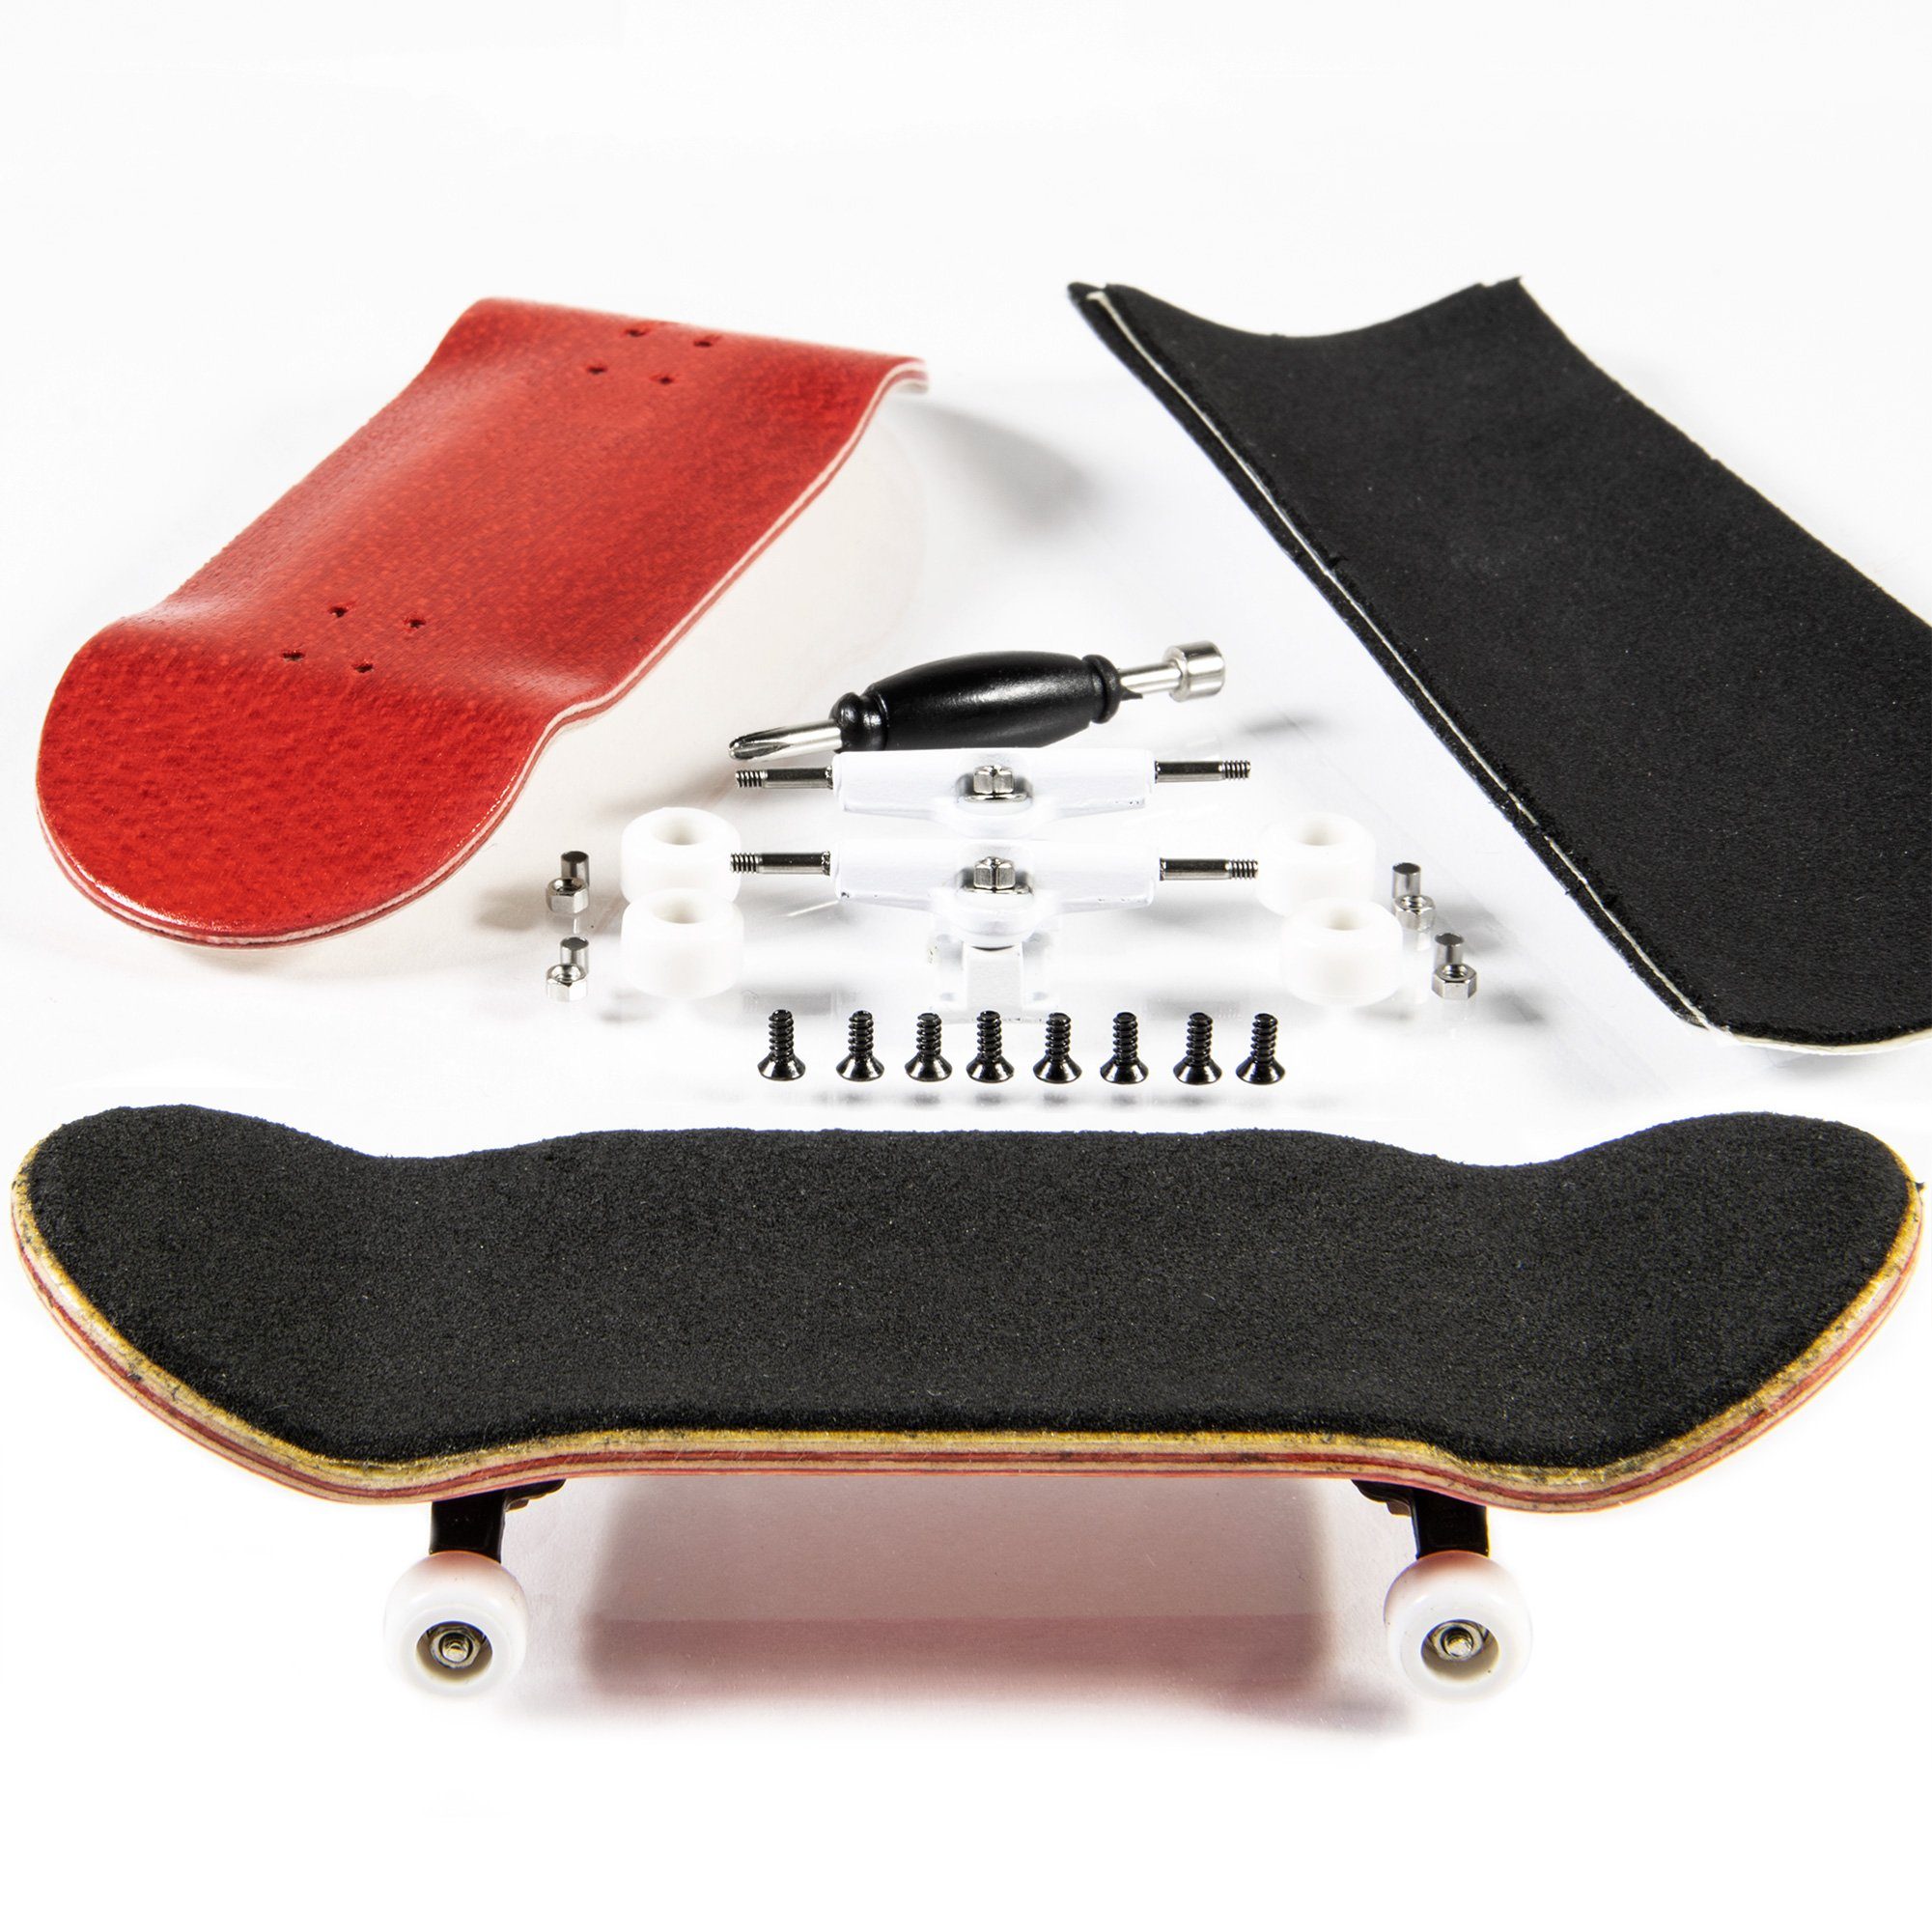 PhoneNatic Miniskateboard Finger-Skateboard Bau Set - Fingerboard - Griffbrett, Design 5 (Rot)